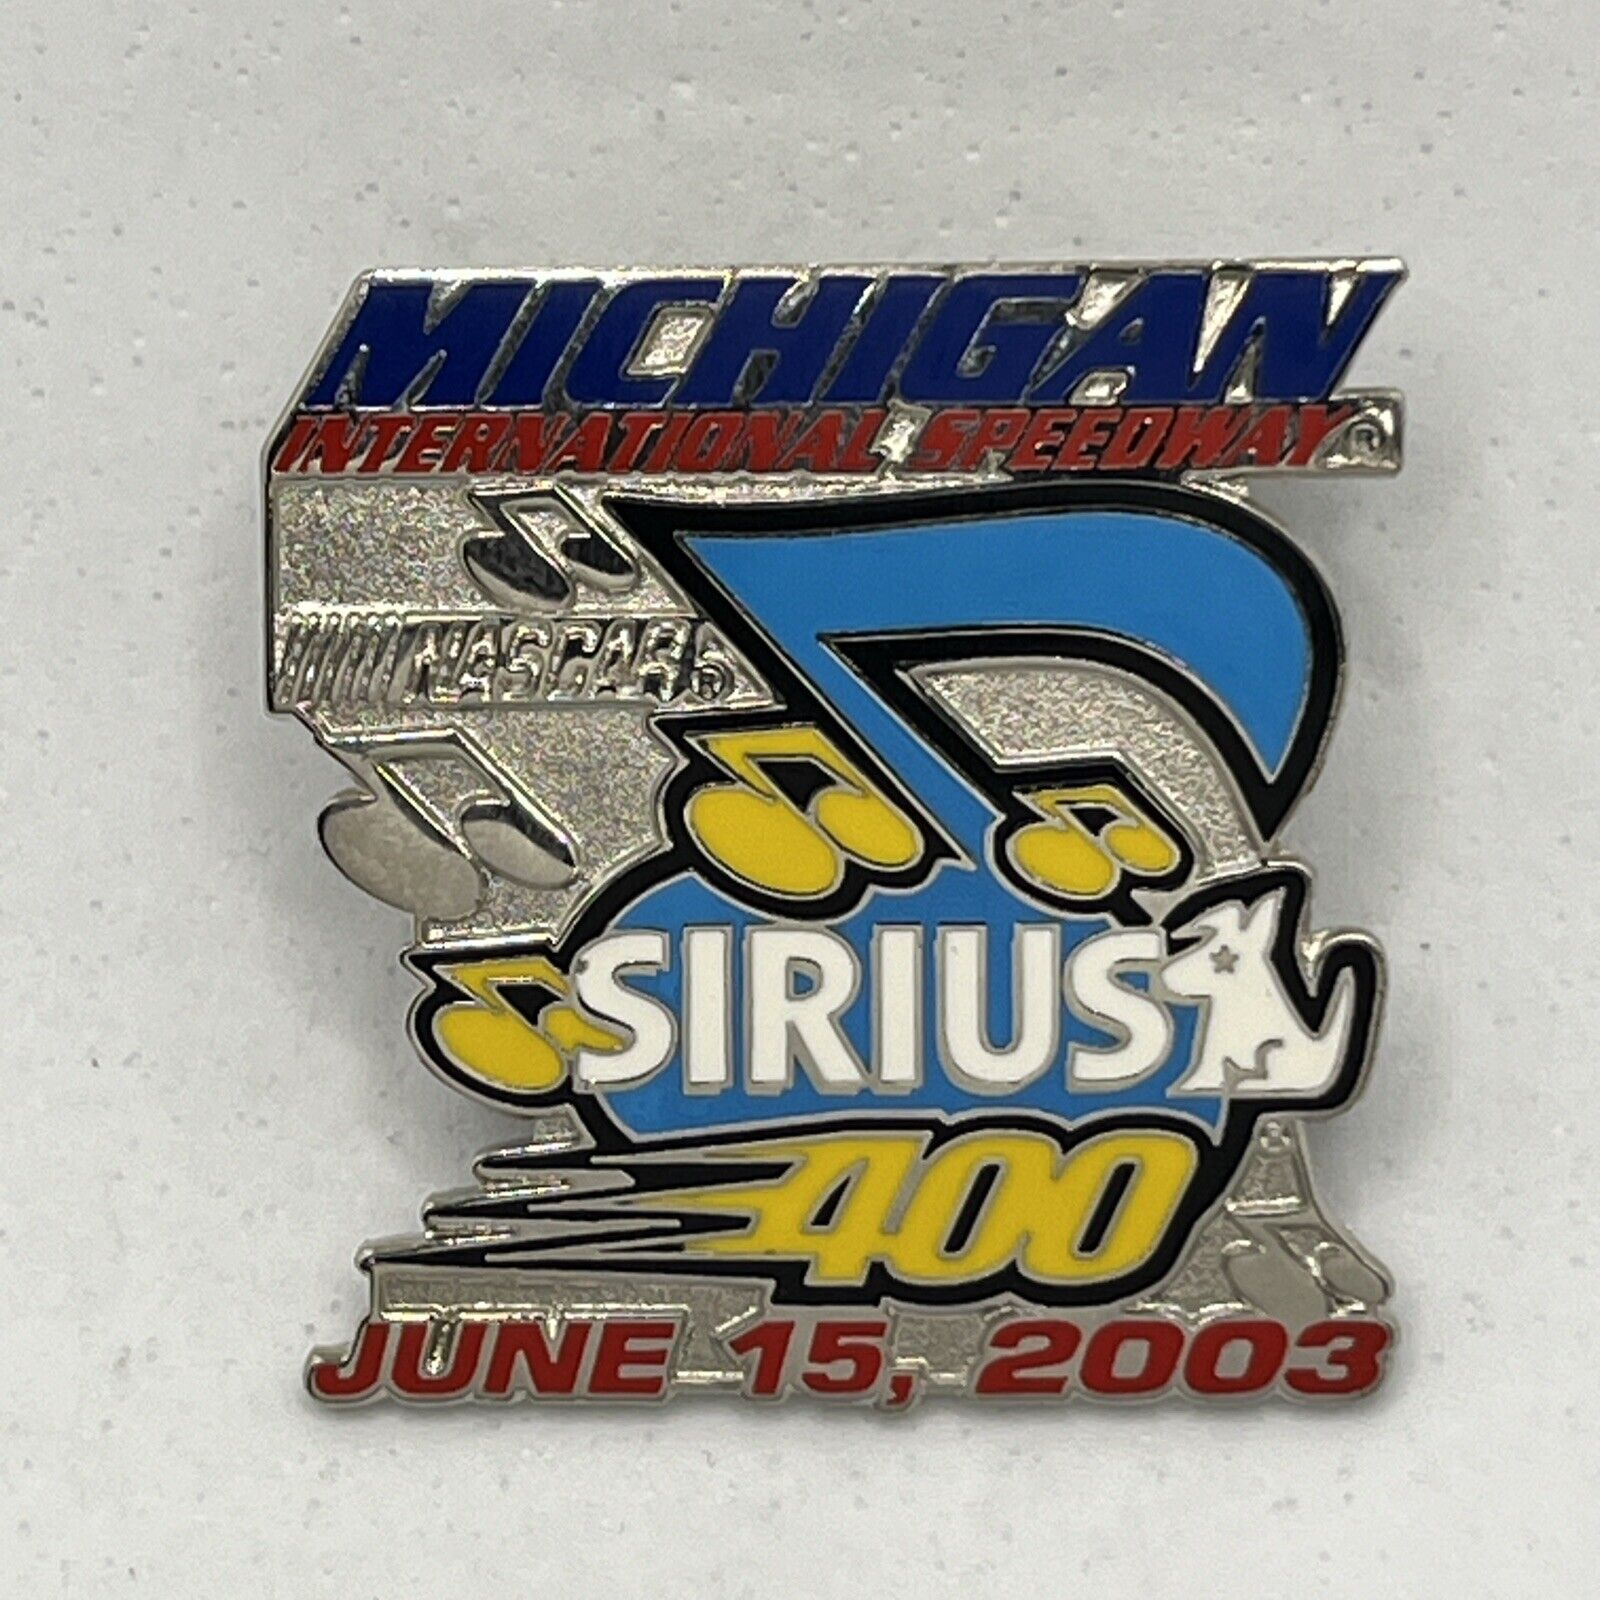 2003 Sirius Radio 400 Michigan Speedway Race Racing NASCAR Enamel Lapel Hat Pin